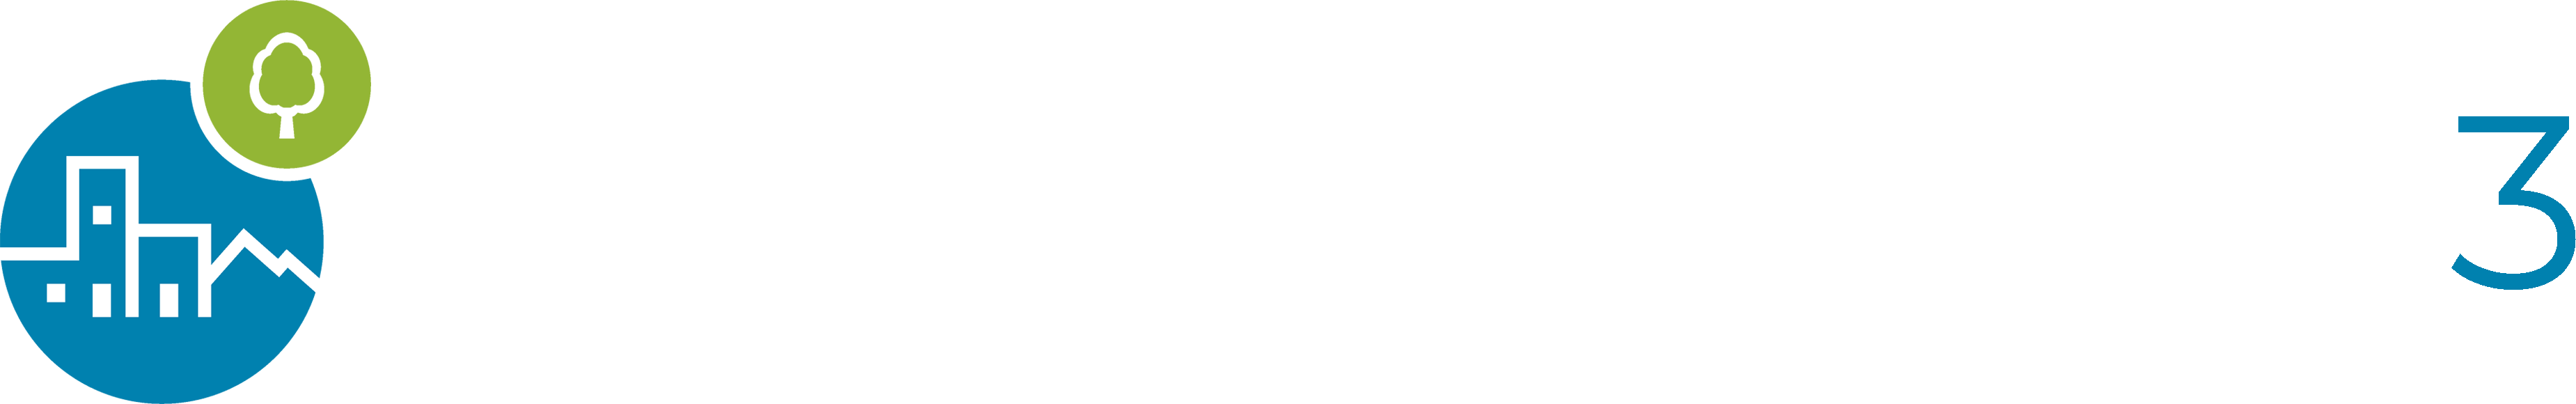 Piattaforma di e-learning | Progetto LIFE CITYAdaP3